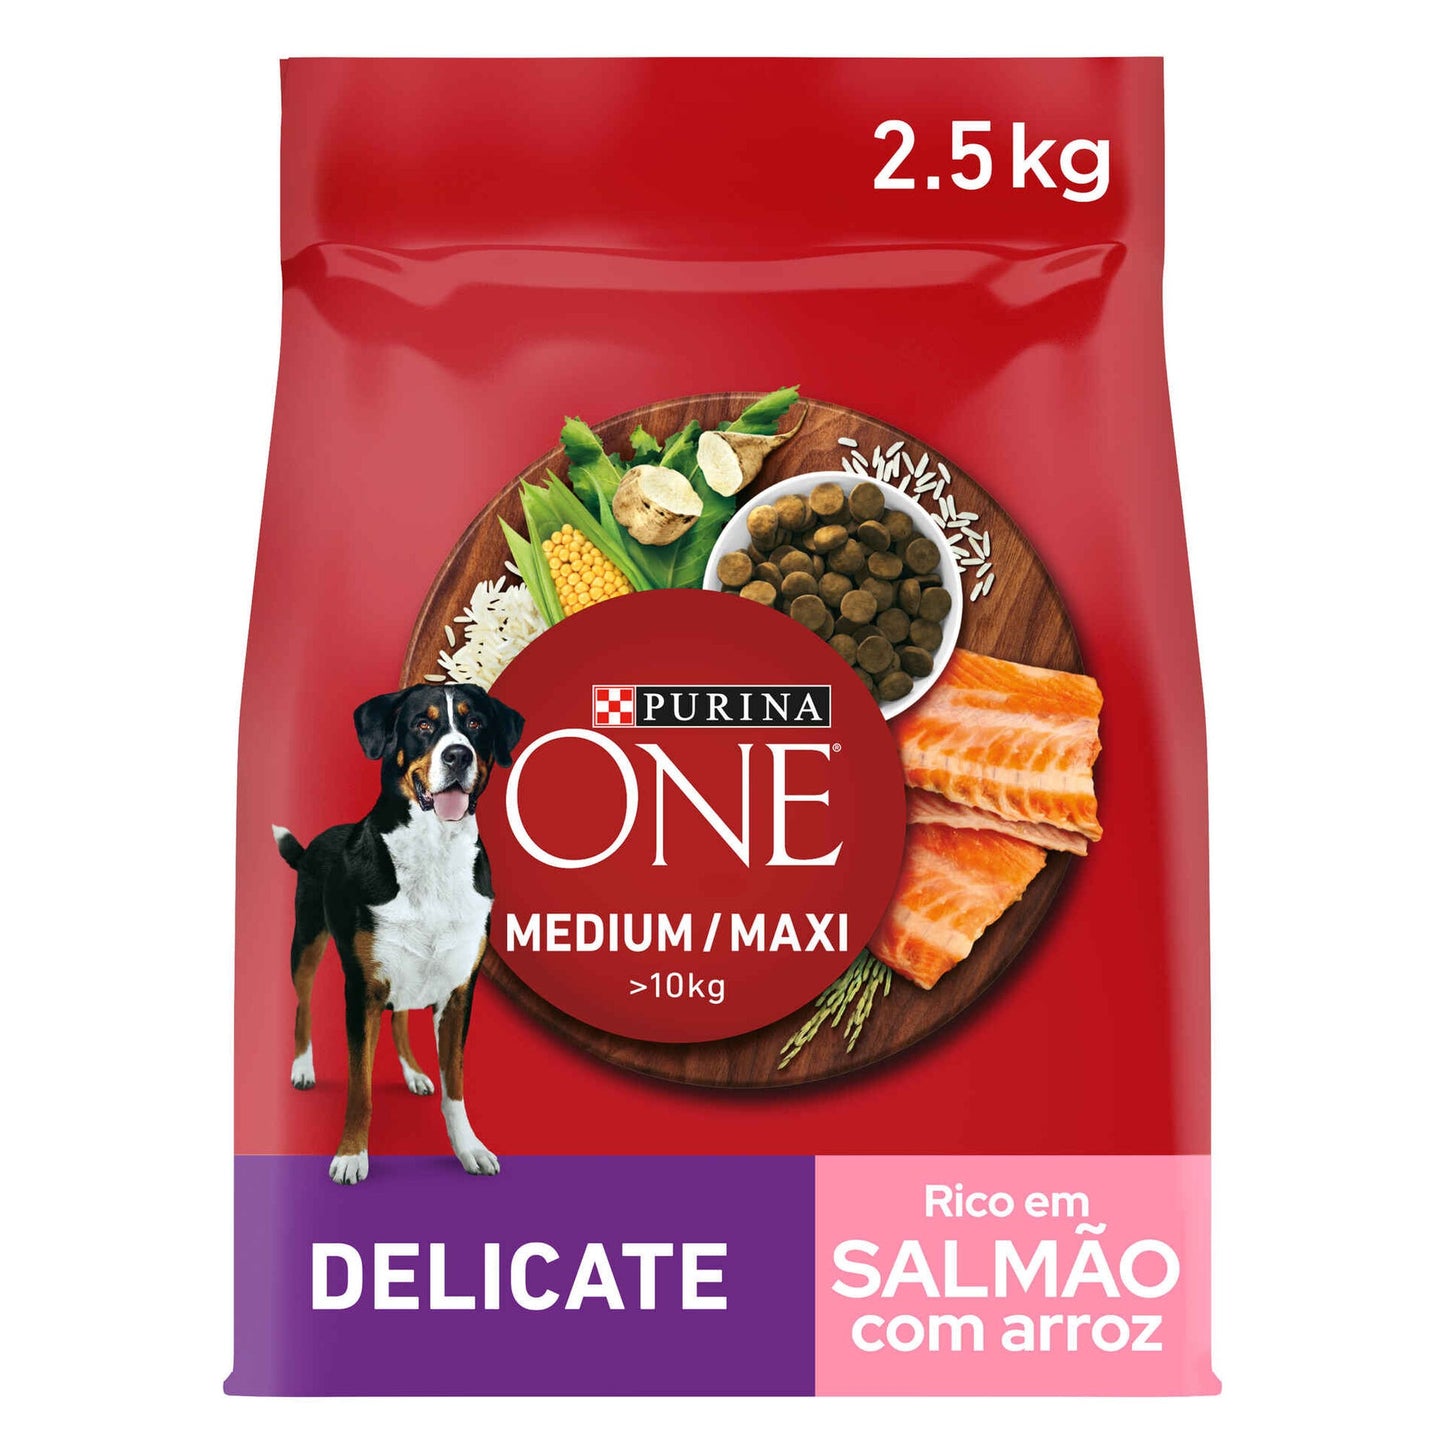 Alimento Delicado de Salmón y Arroz para Perros Adultos Medianos y Maxi Purina One 2,5kg